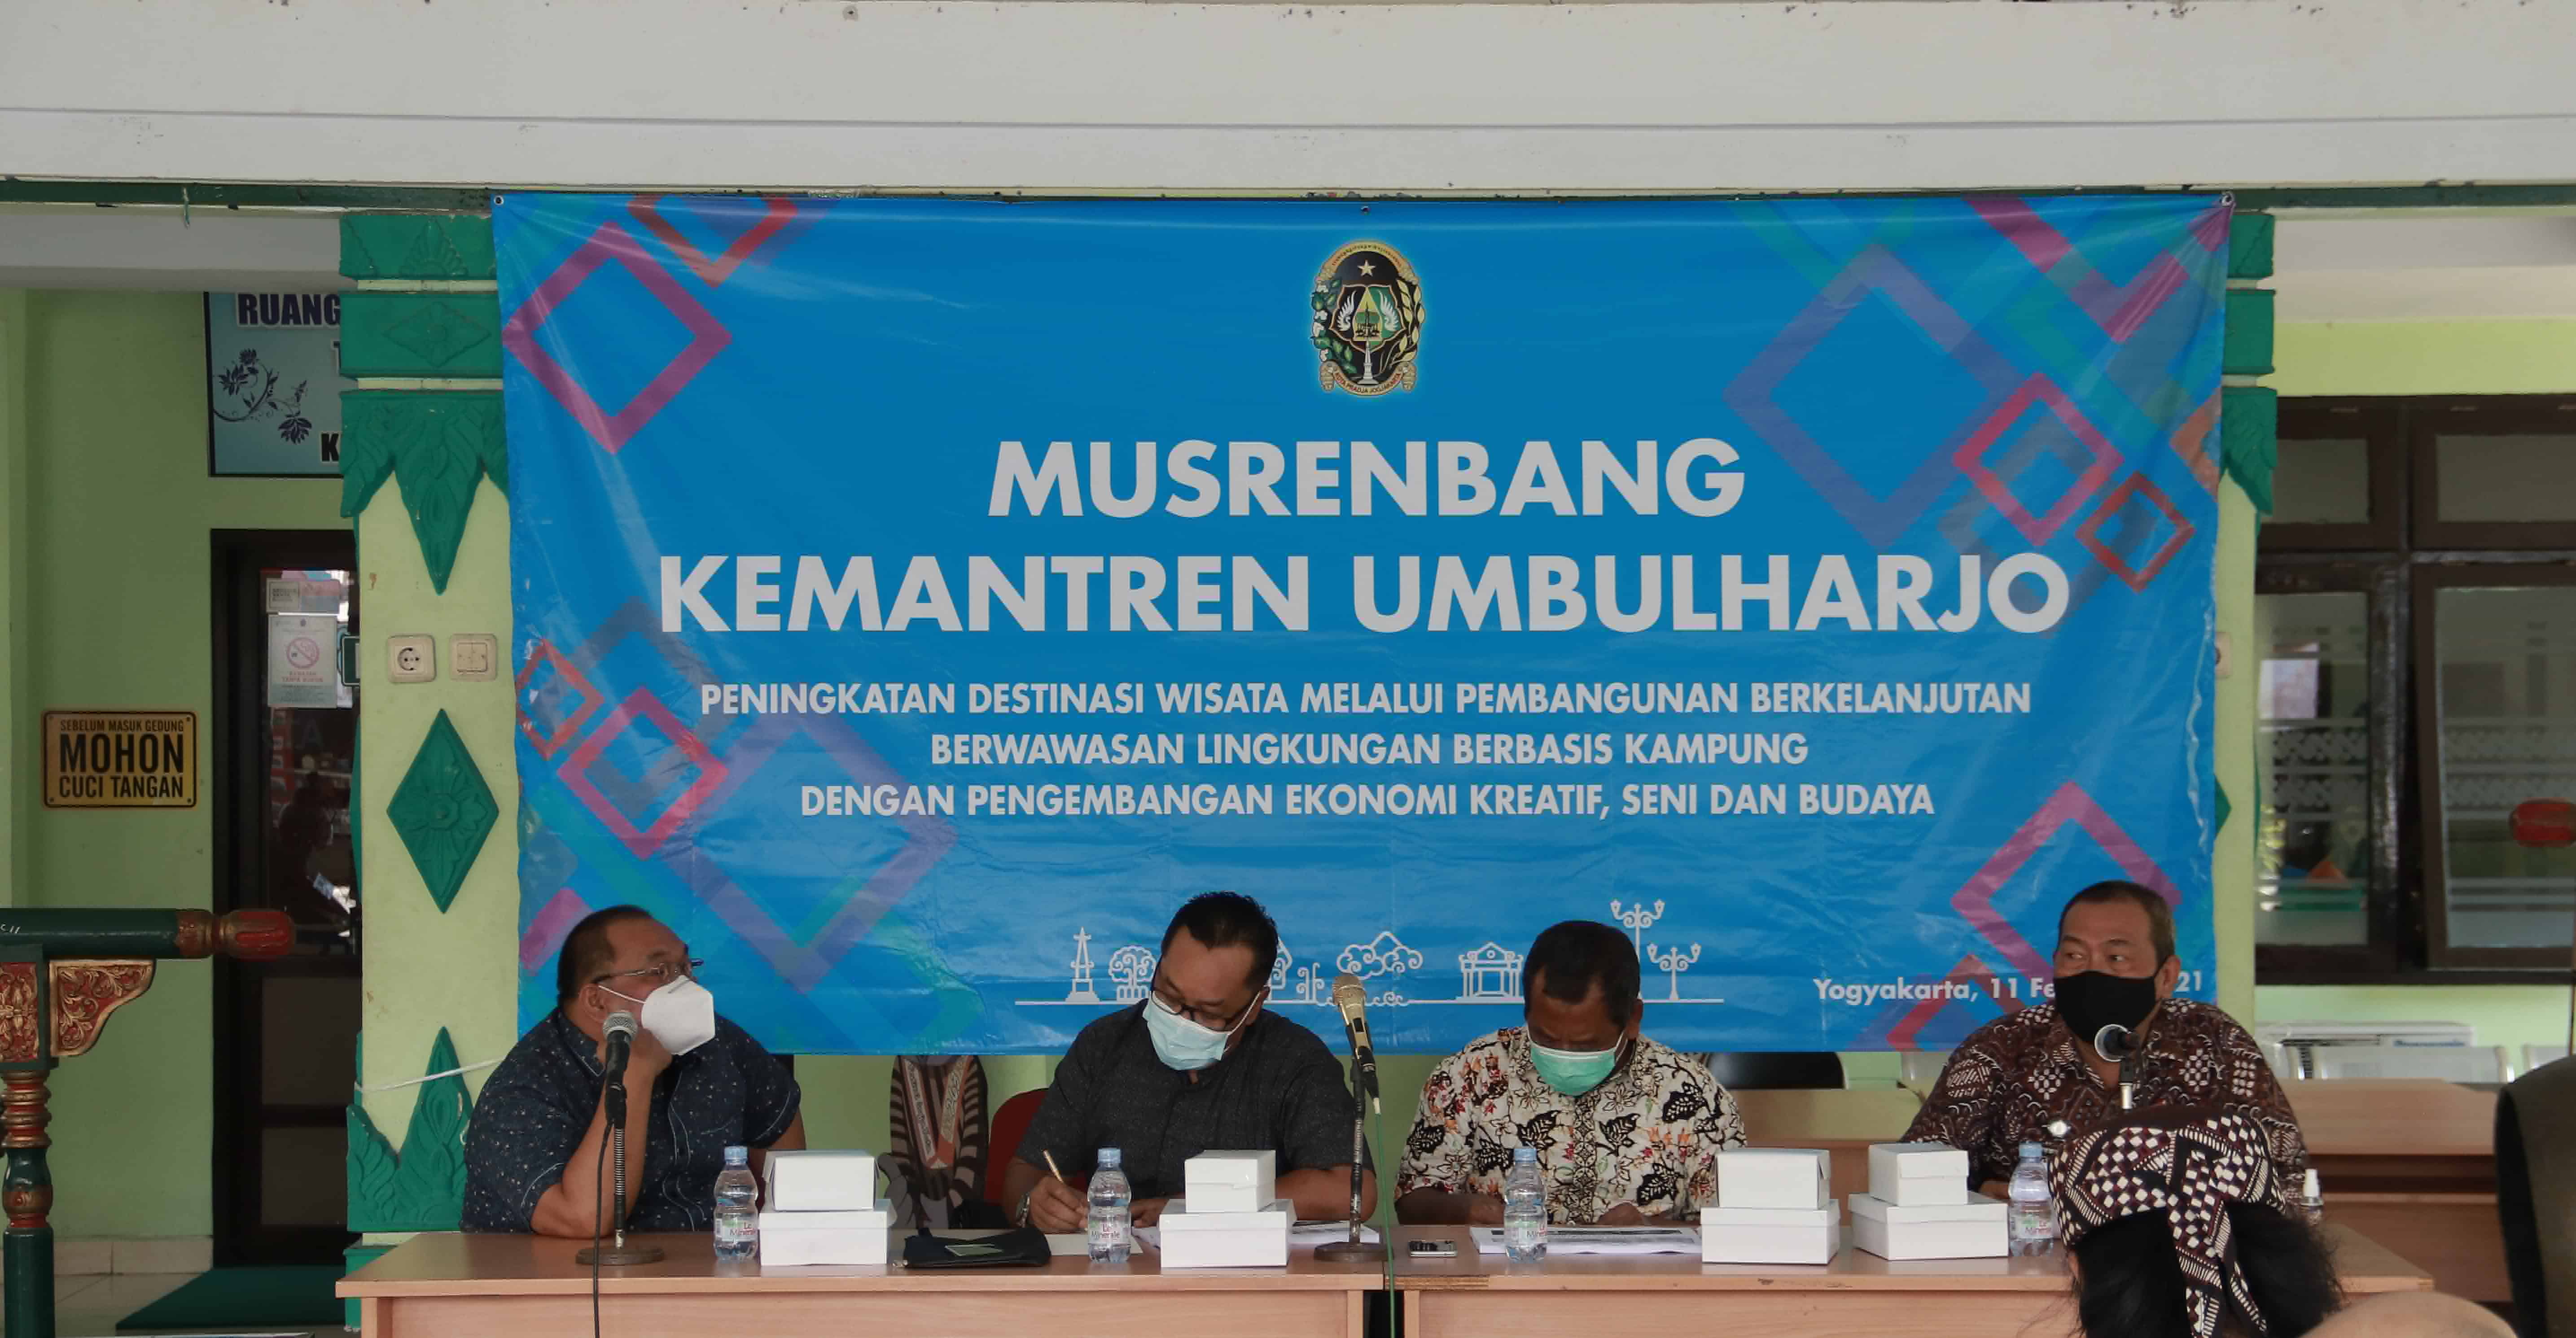 Musrenbang Kemantren Umbulharjo Kota Yogyakarta Tahun 2021